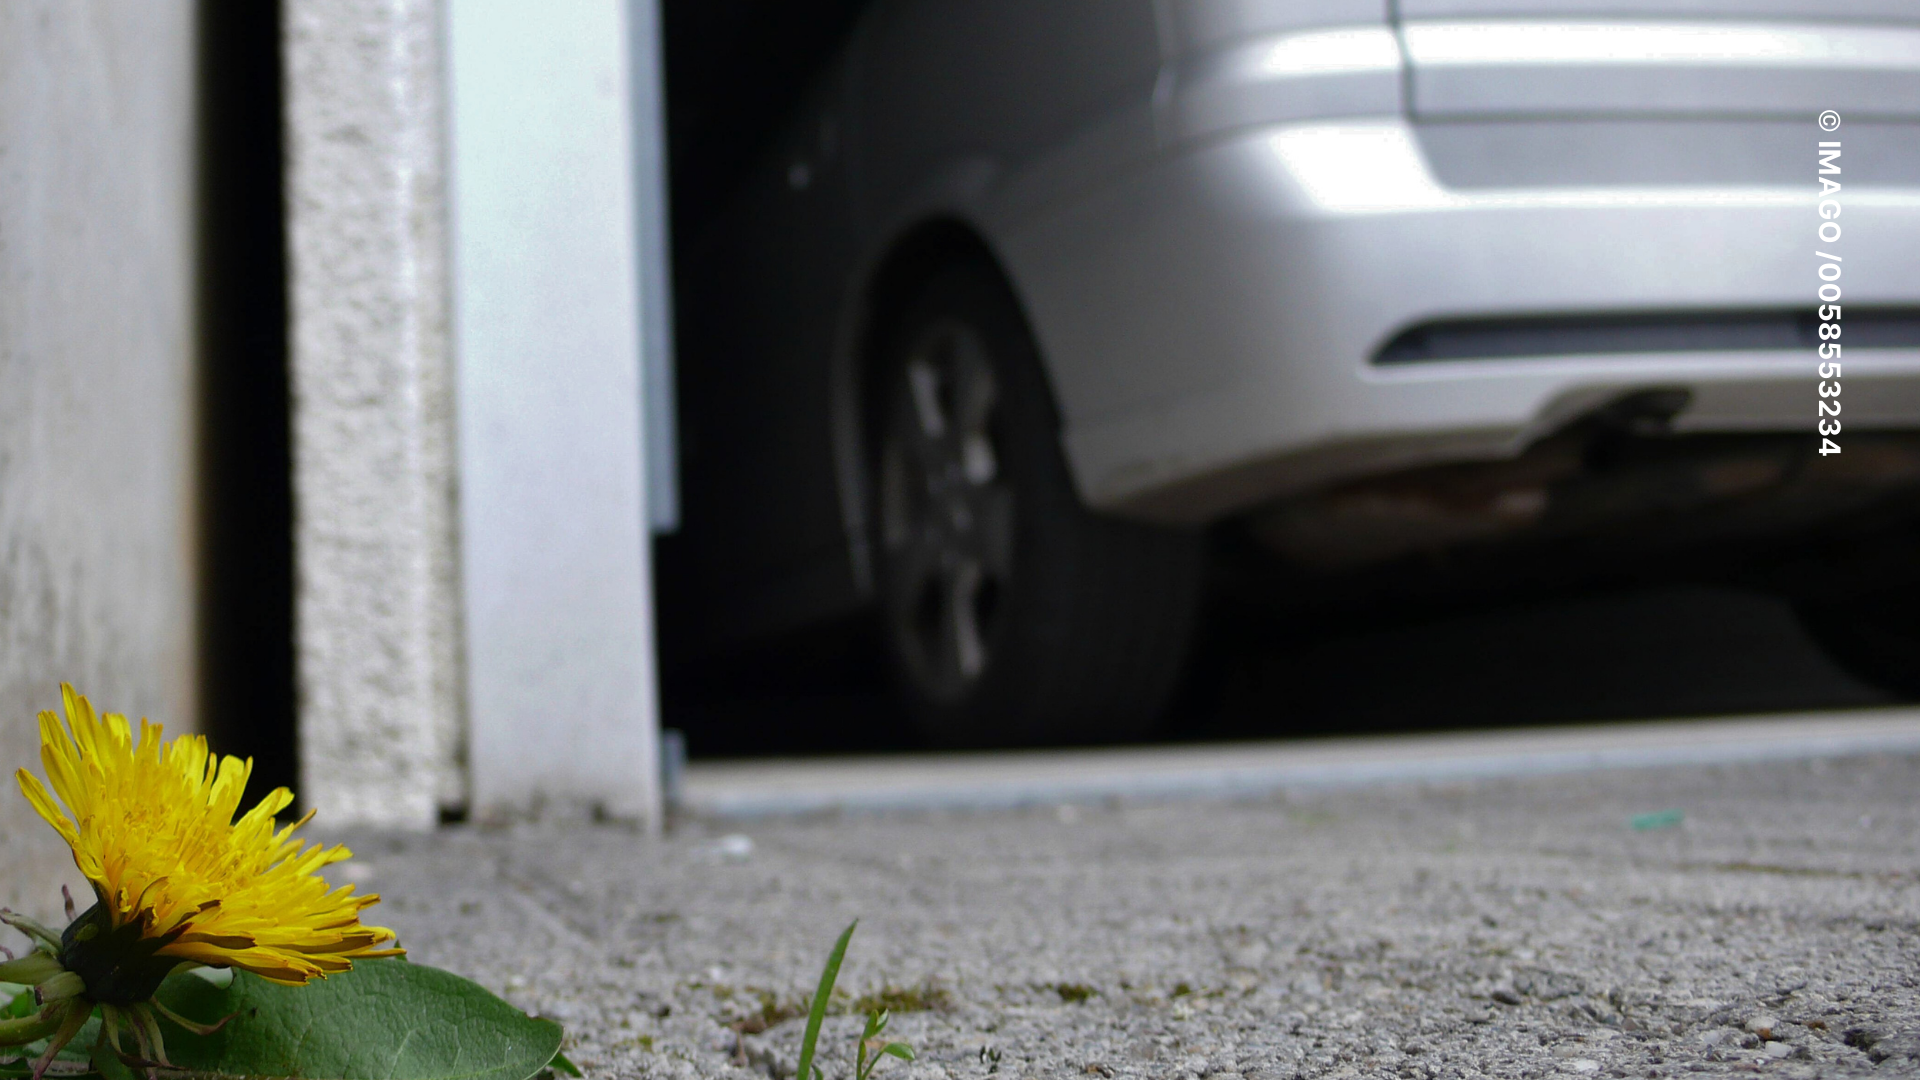 Experten warnen: Unterboden vom Auto säubern ist gefährlich